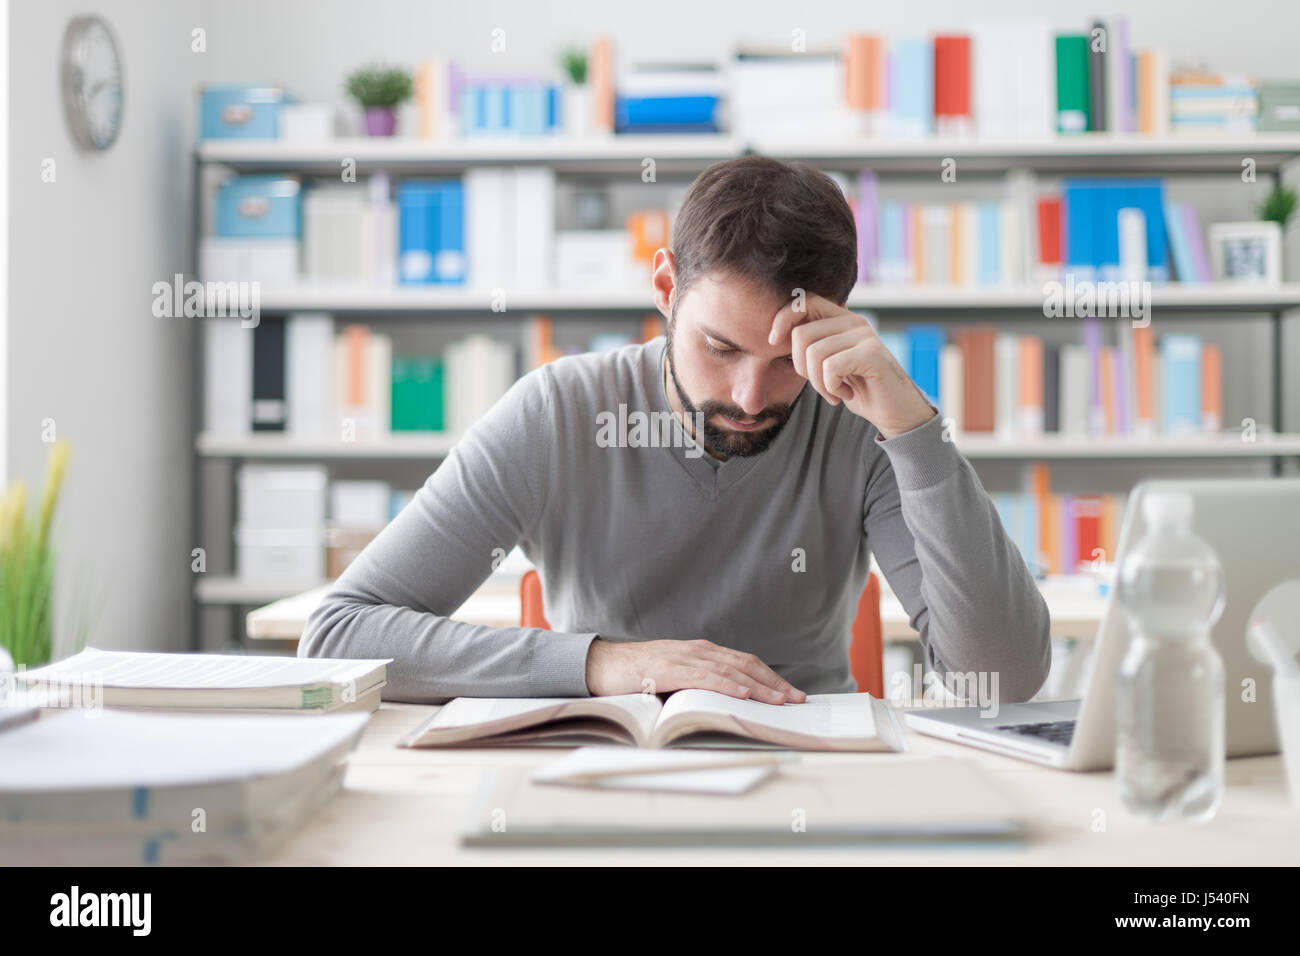 Erwachsener Mann am Schreibtisch sitzen und studieren an der Bibliothek konzentriert lernen und selbst-Verbesserung-Konzept Stockfoto